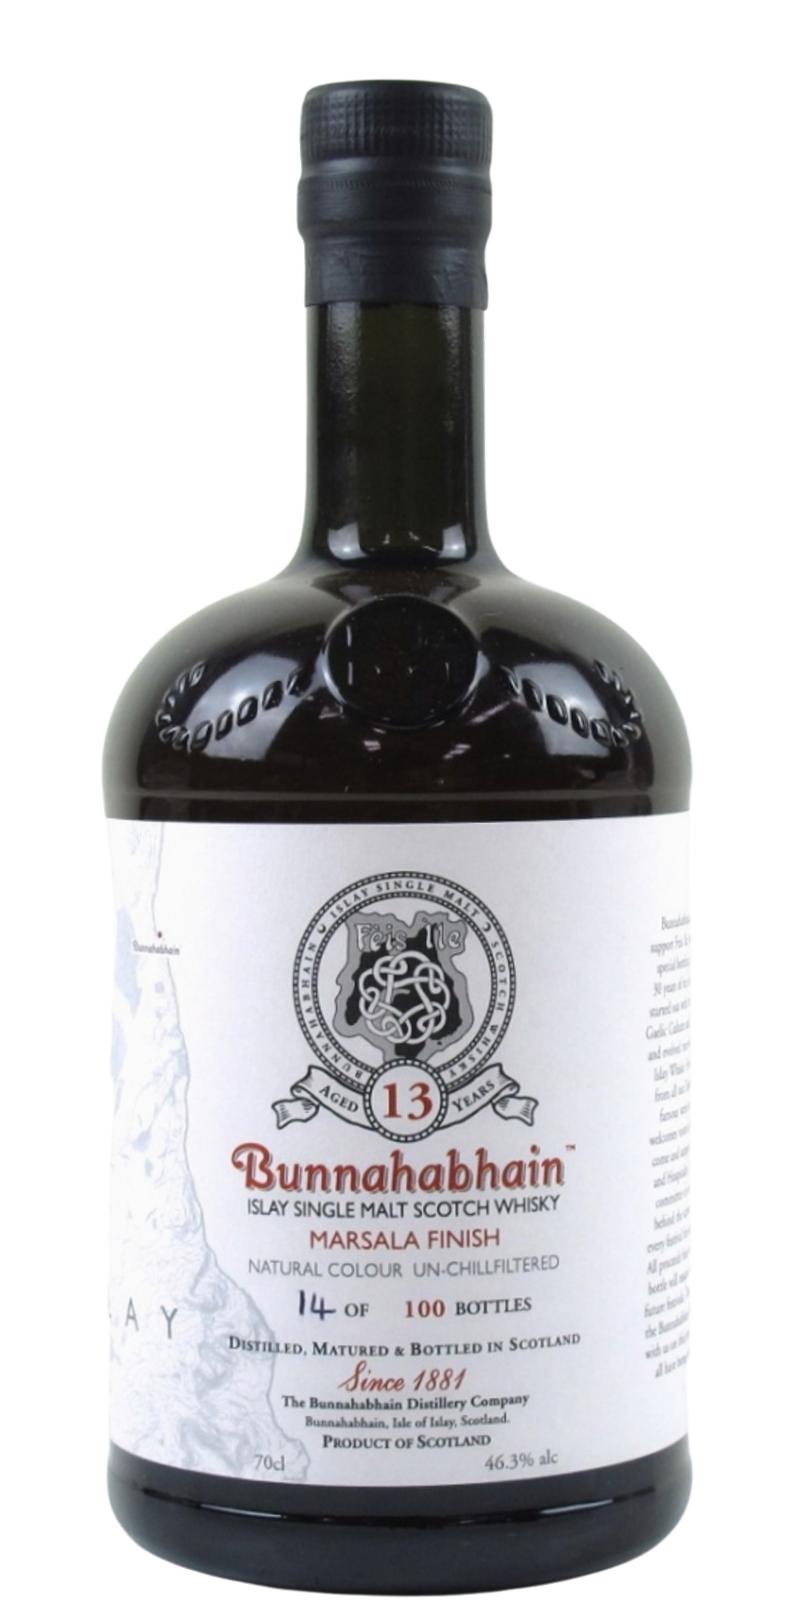 Bunnahabhain 13 Year Old Marsala Finish Single Malt Scotch Whisky at CaskCartel.com